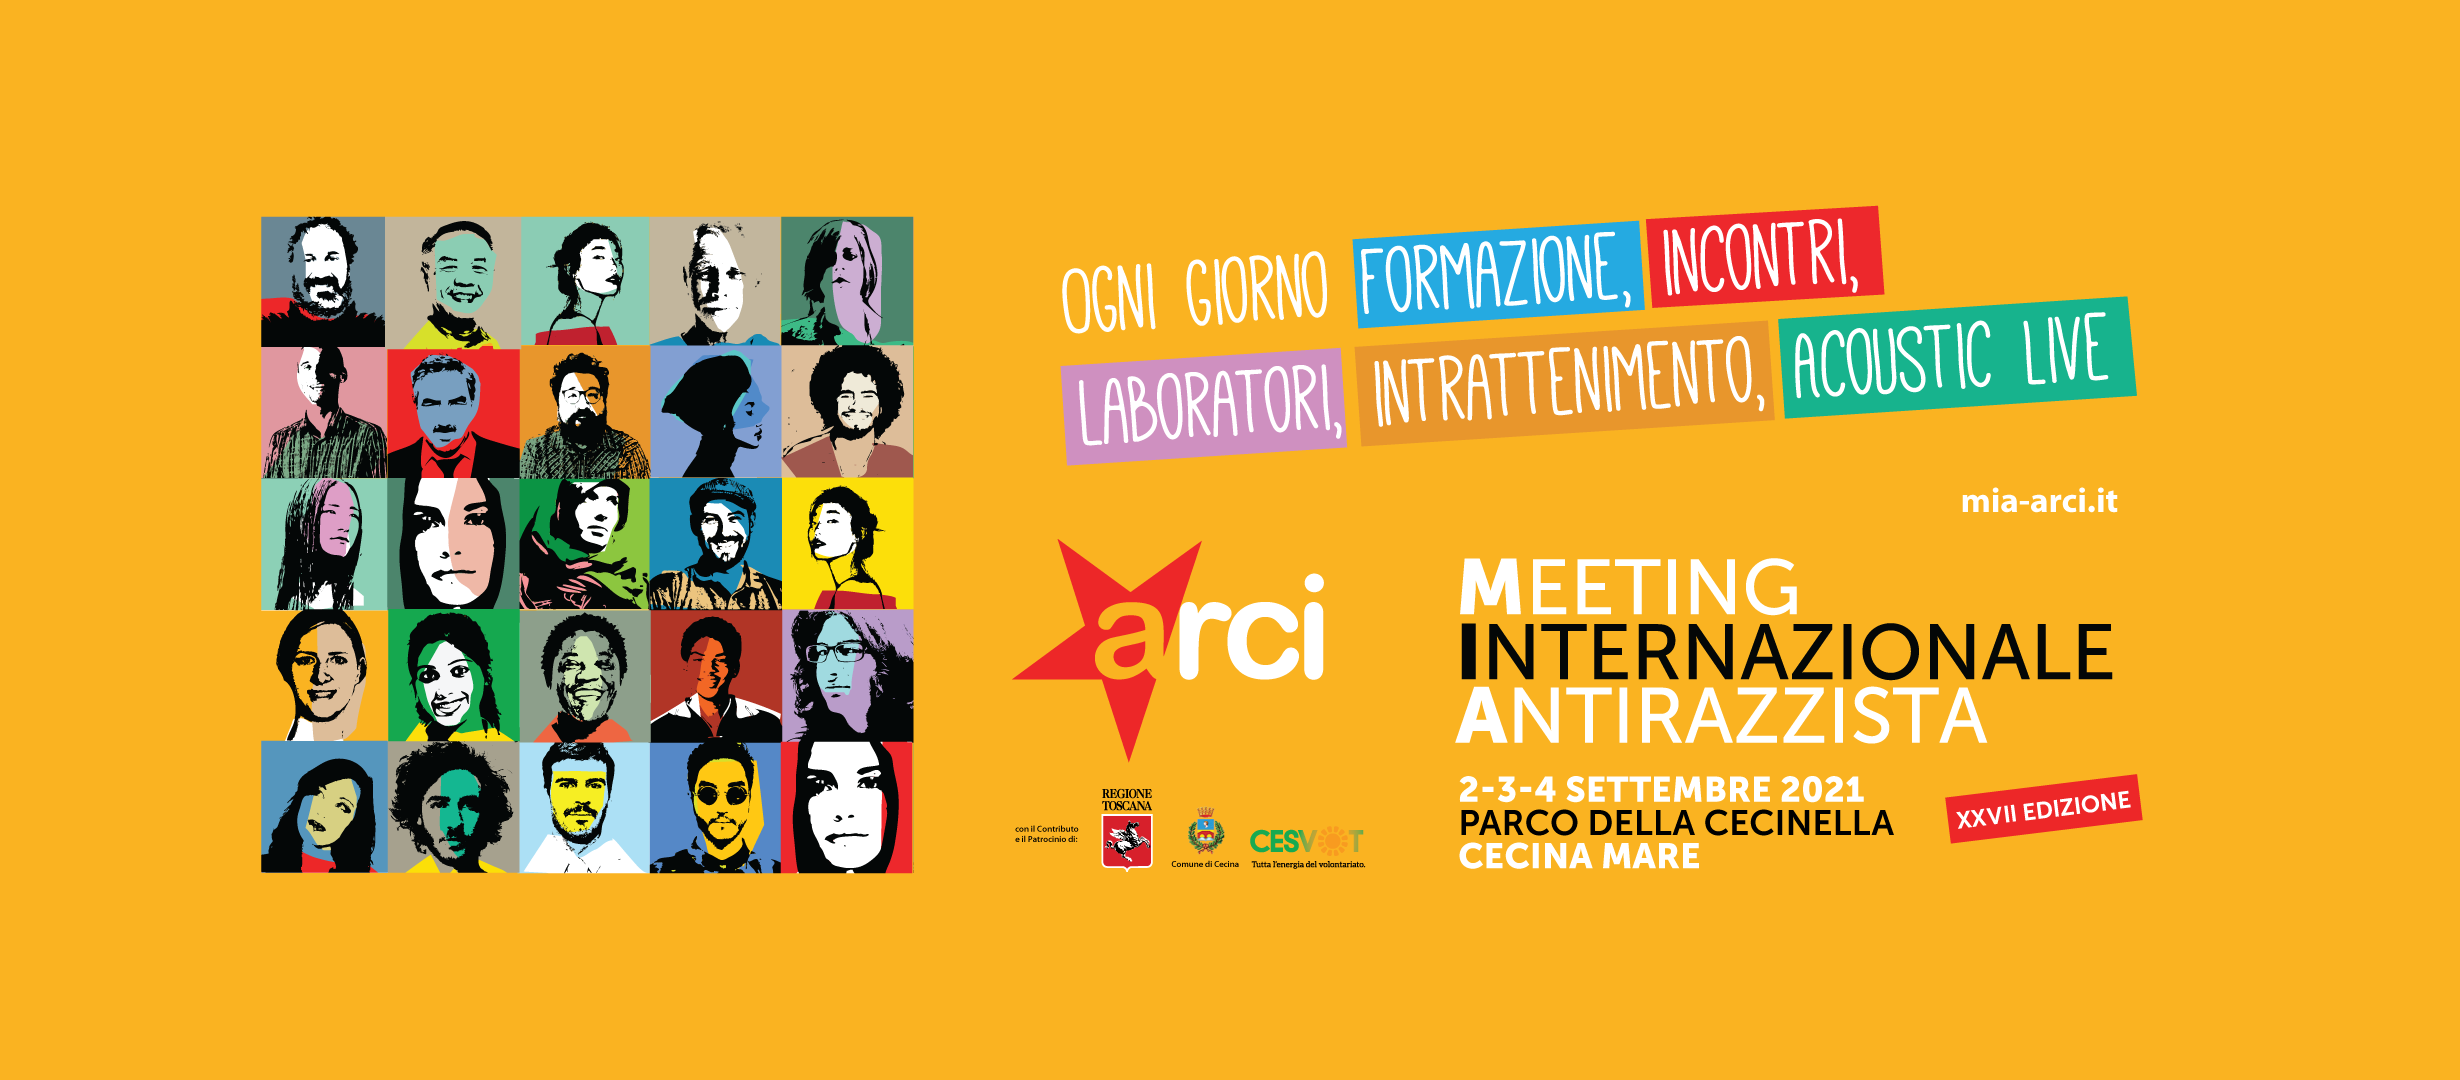 Meeting Internazionale Antirazzista, dal 2 al 4 settembre la XXVII edizione